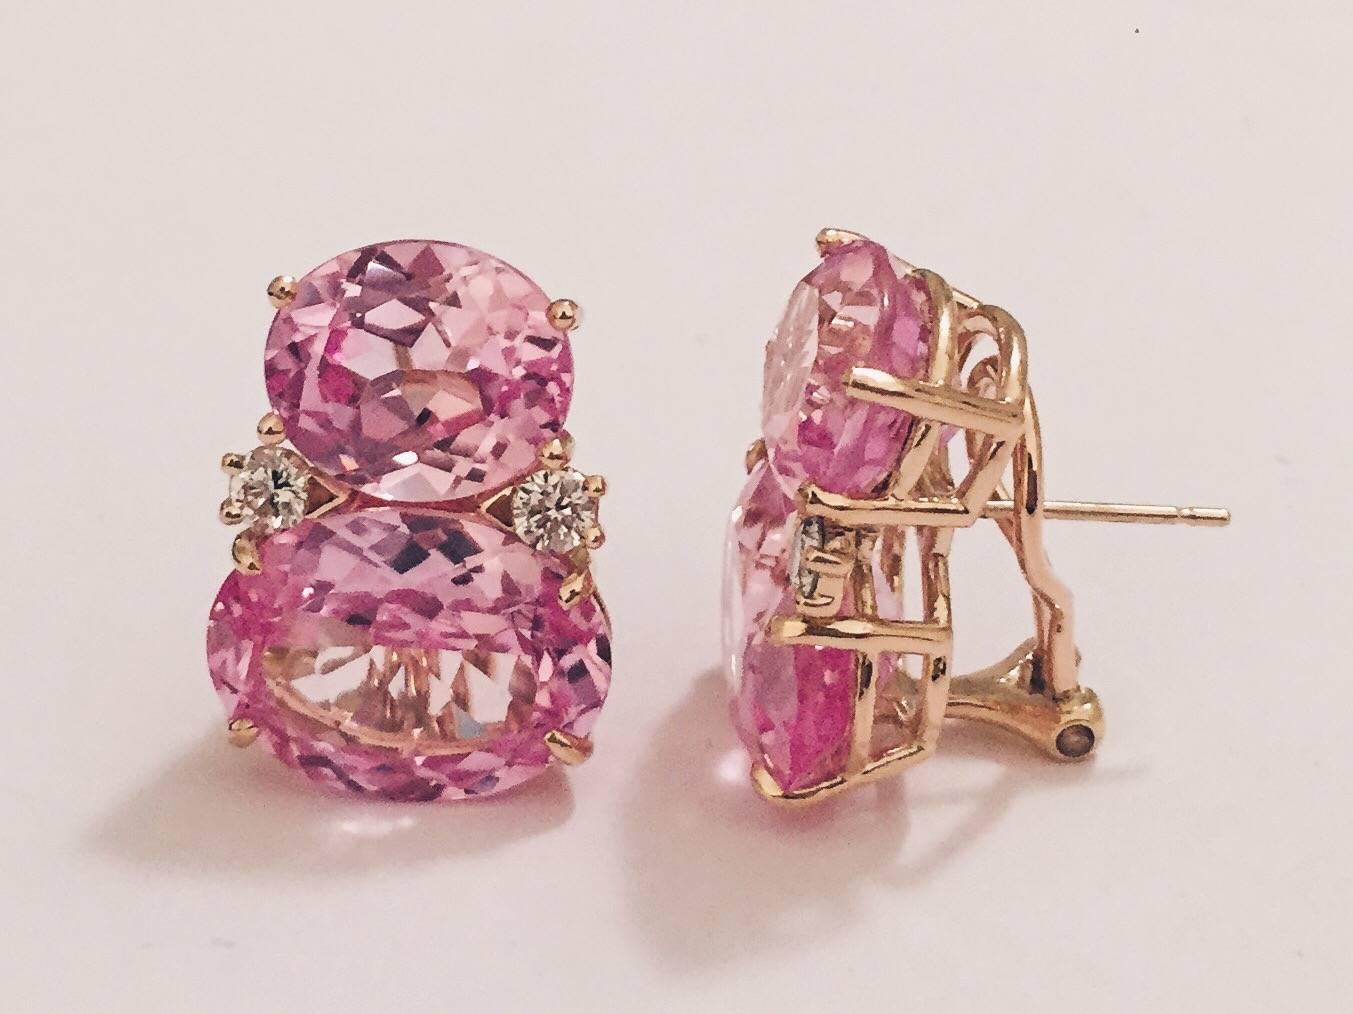 große GUM DROP™-Ohrringe aus 18kt Gelbgold mit facettiertem rosa Topas und Diamanten.  Der oberste ovale rosa Topas  ca. 5 ct und der untere facettierte rosa Topas ca. 12 ct, sowie 4 Diamanten mit einem Gewicht von ca. 0,60 ct  

Die Ohrringe sind